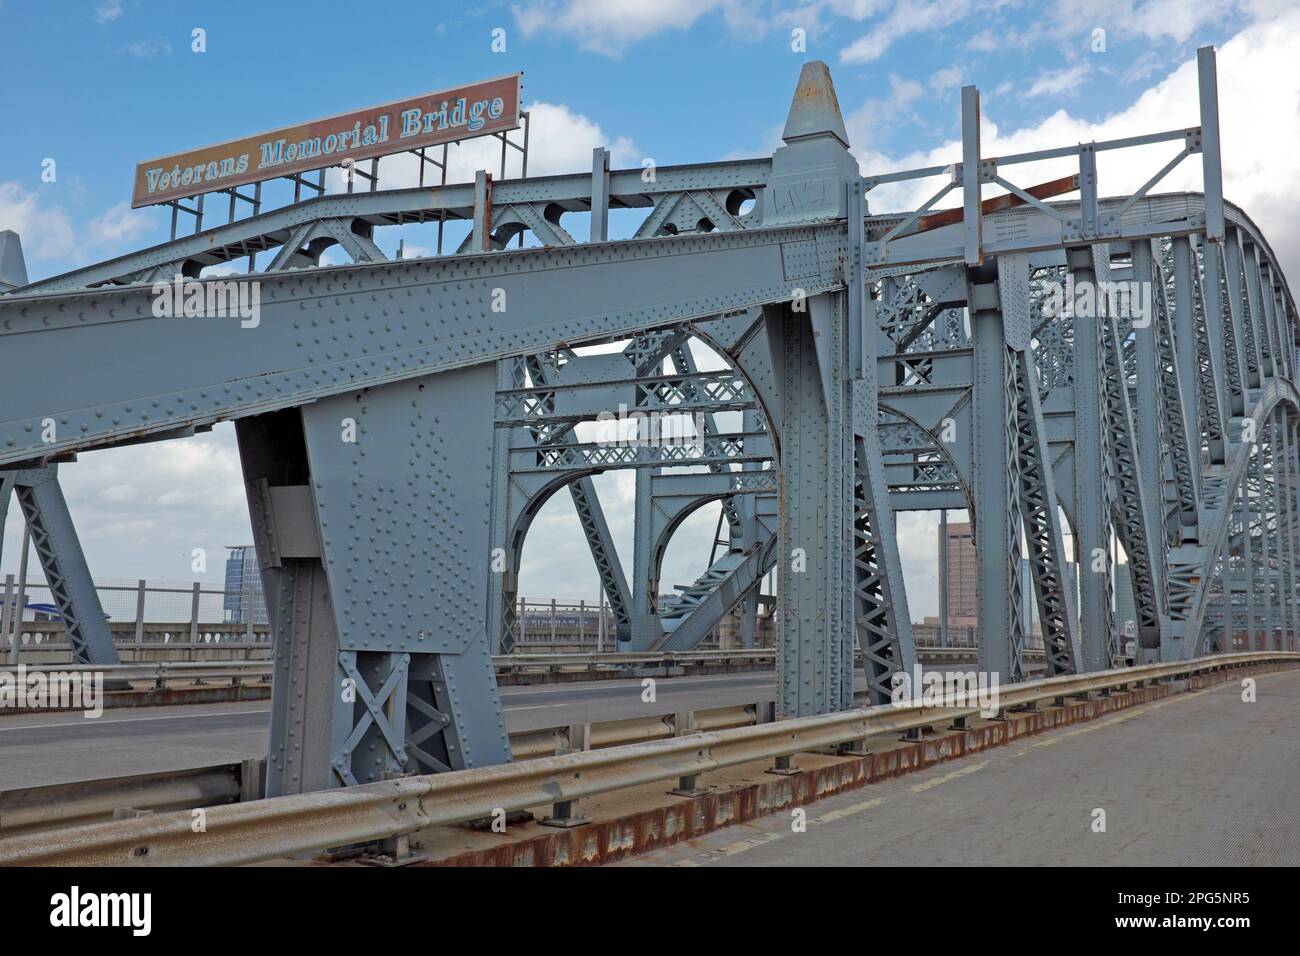 El Veterans Memorial Bridge, un puente de cubierta suspendida de arco de compresión de alto nivel en Cleveland, Ohio, EE.UU., también conocido como el puente Detroit-Superior. Foto de stock